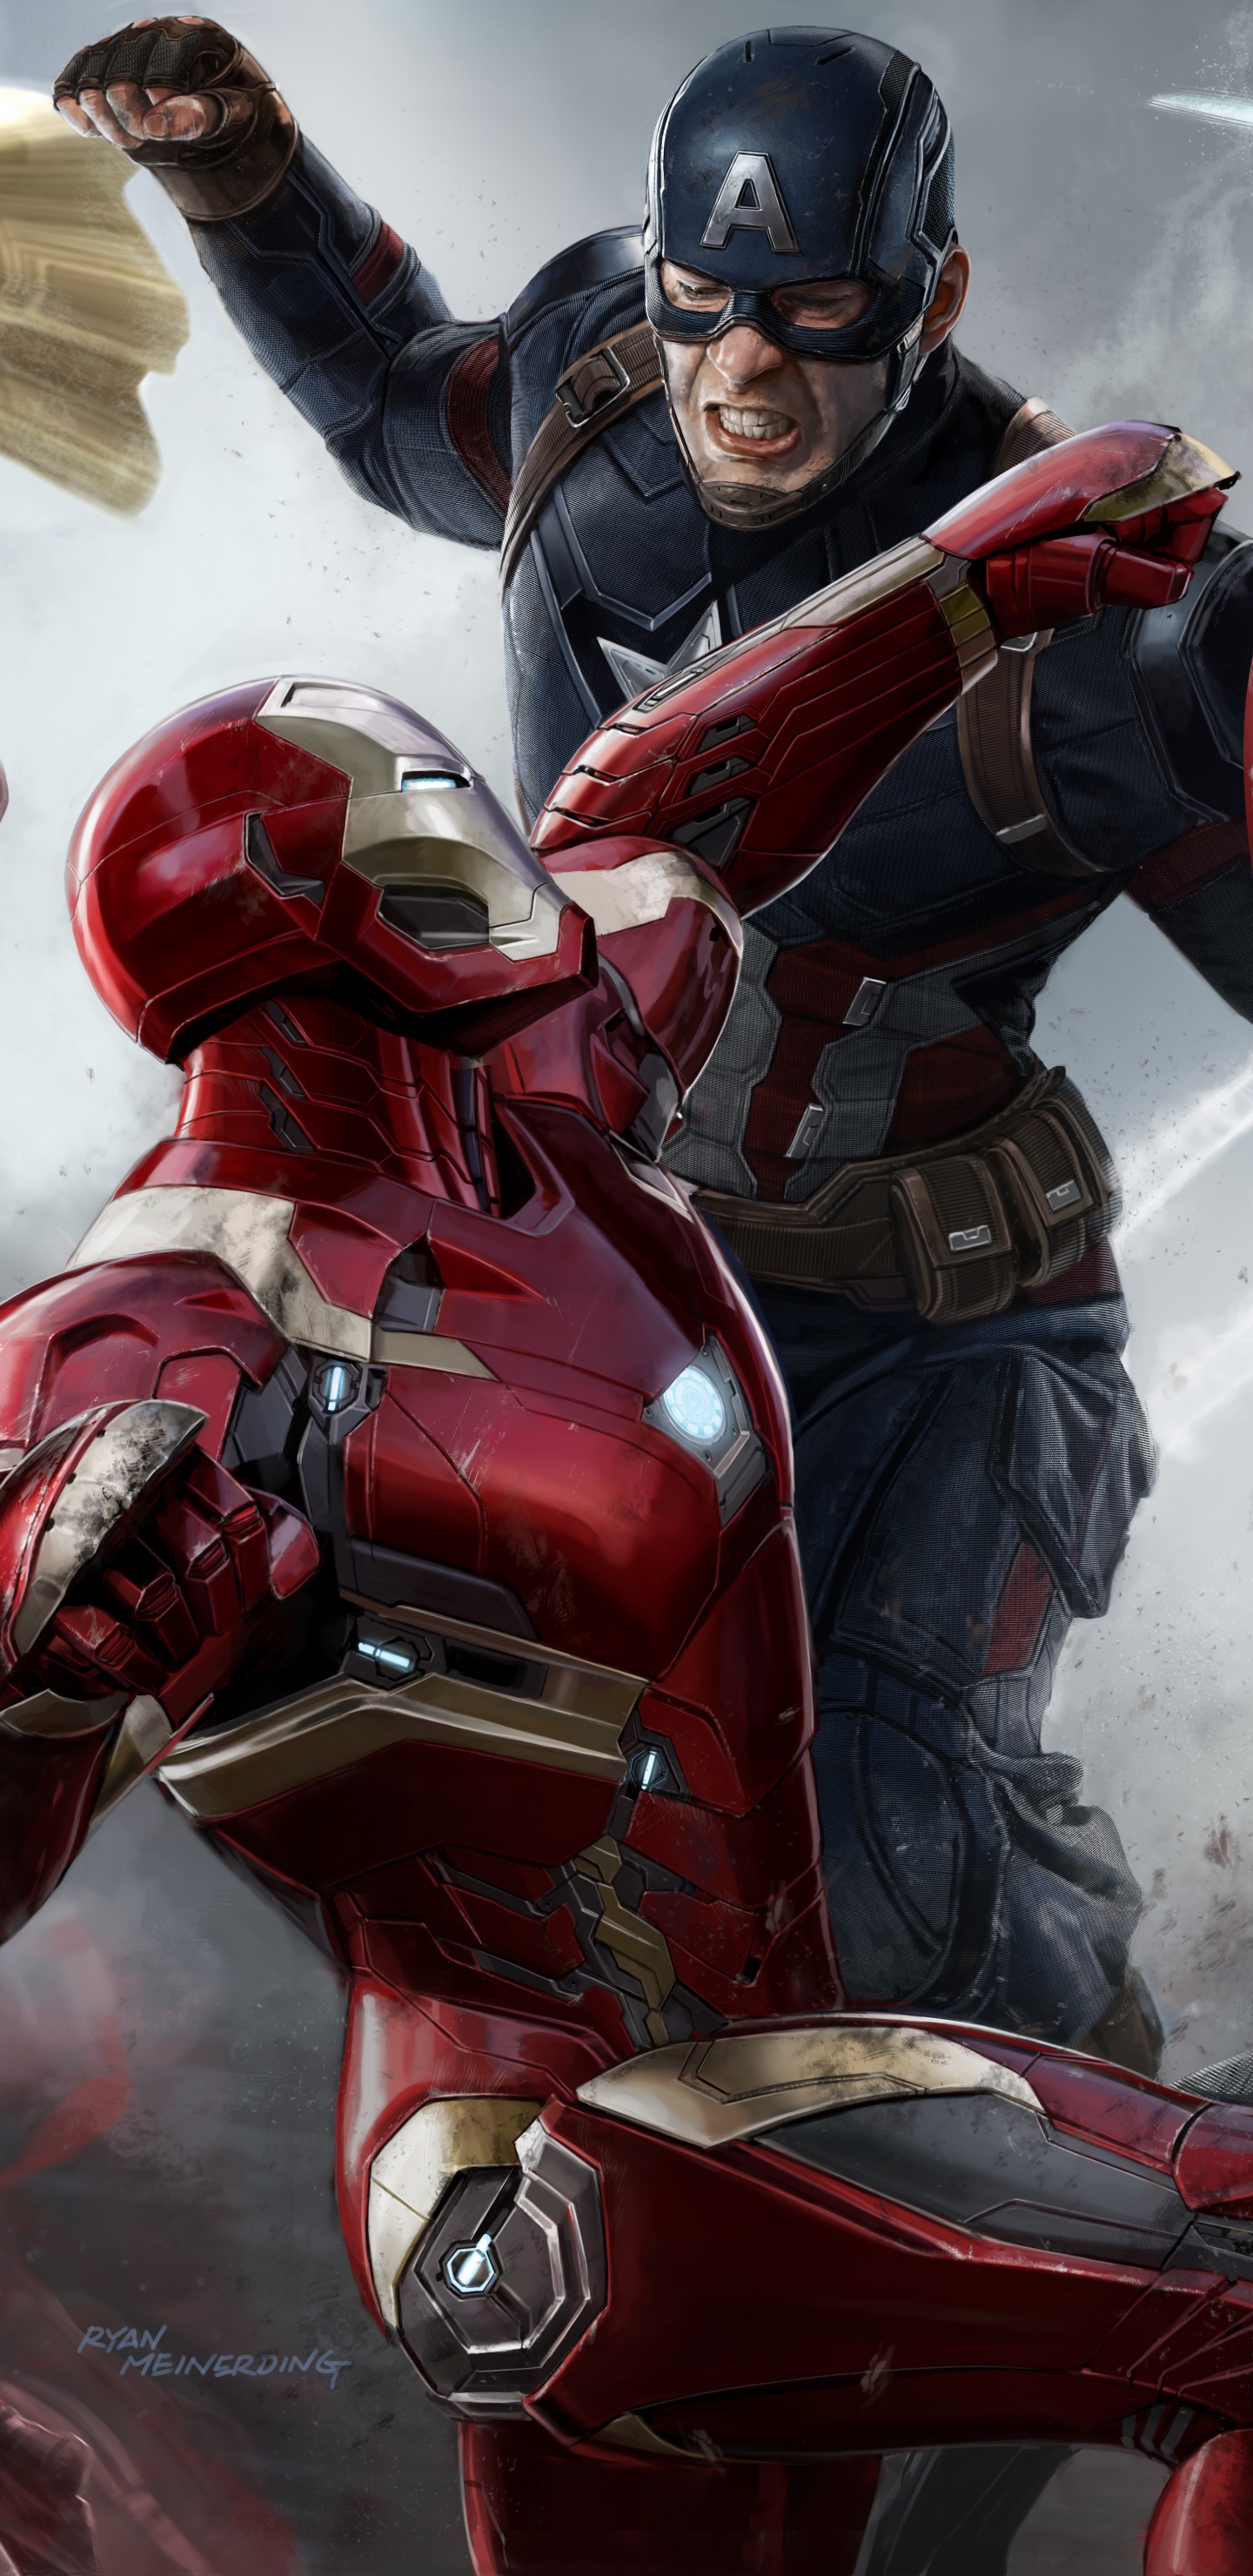 El Capitán América De La Guerra Civil, Capitán América, Superhéroe, Juego de Pc, Marvel Studios. Wallpaper in 1440x2960 Resolution